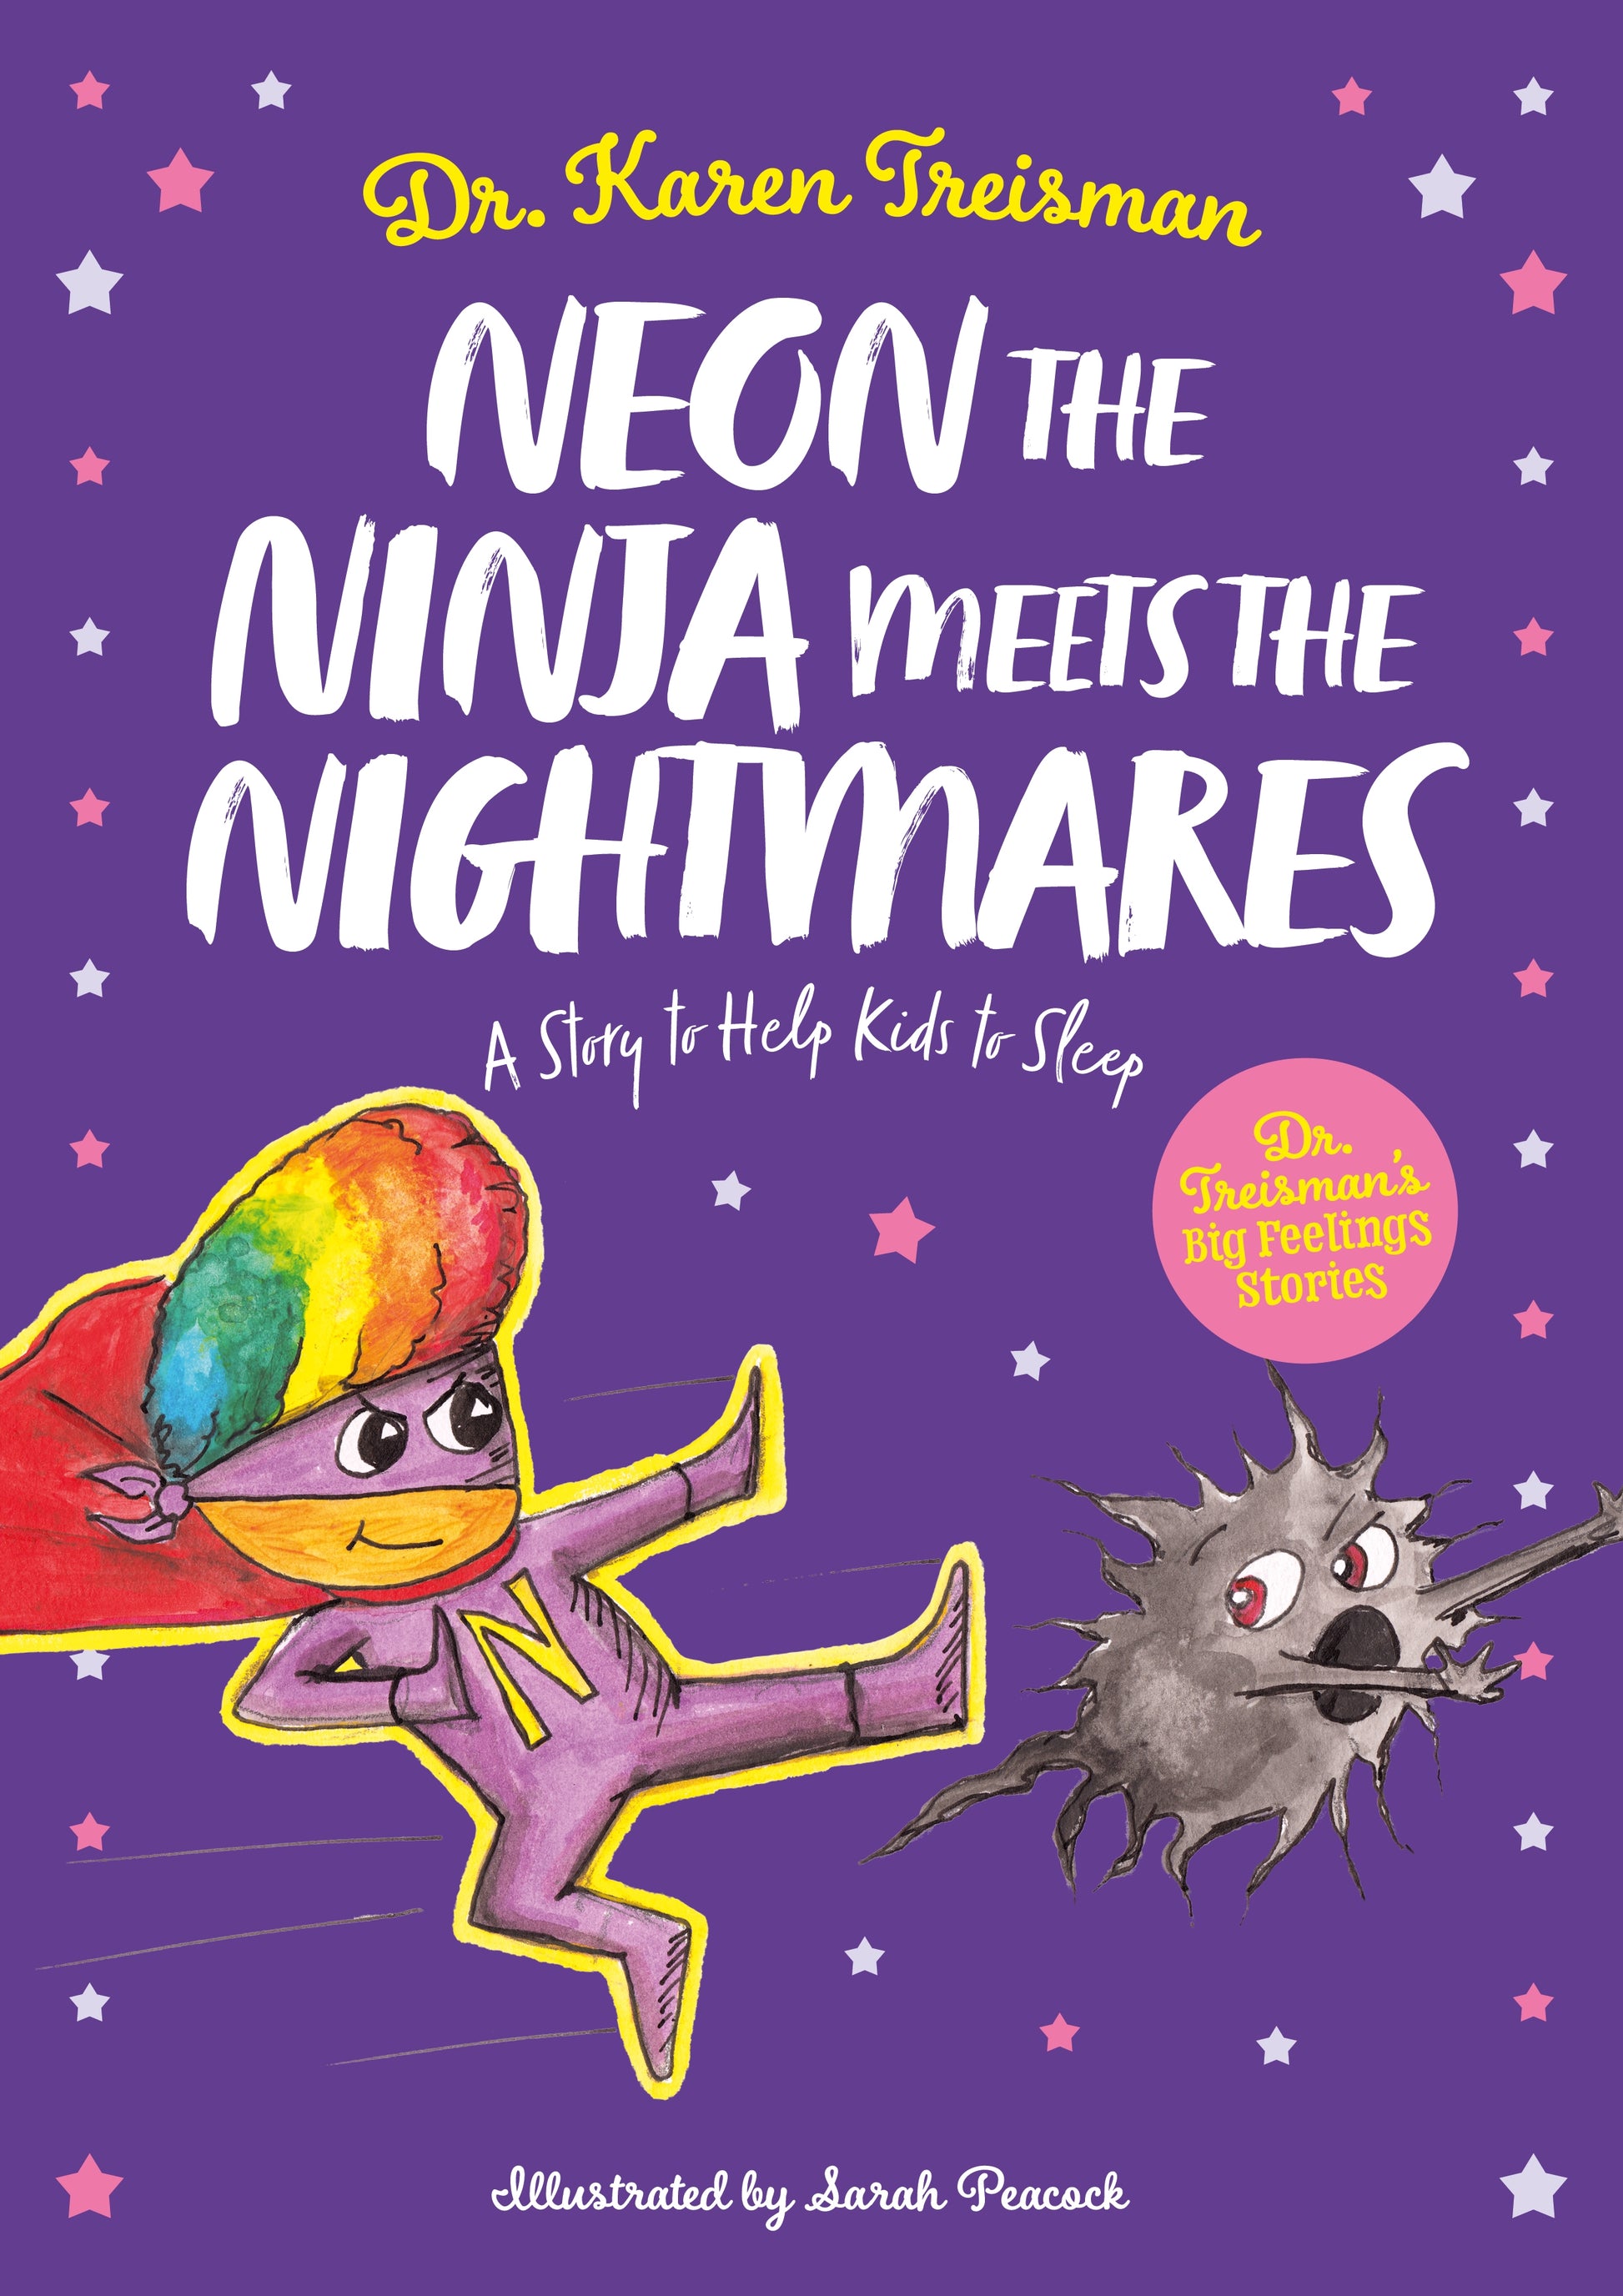 Neon the Ninja Meets the Nightmares by Karen Treisman, Sarah Peacock